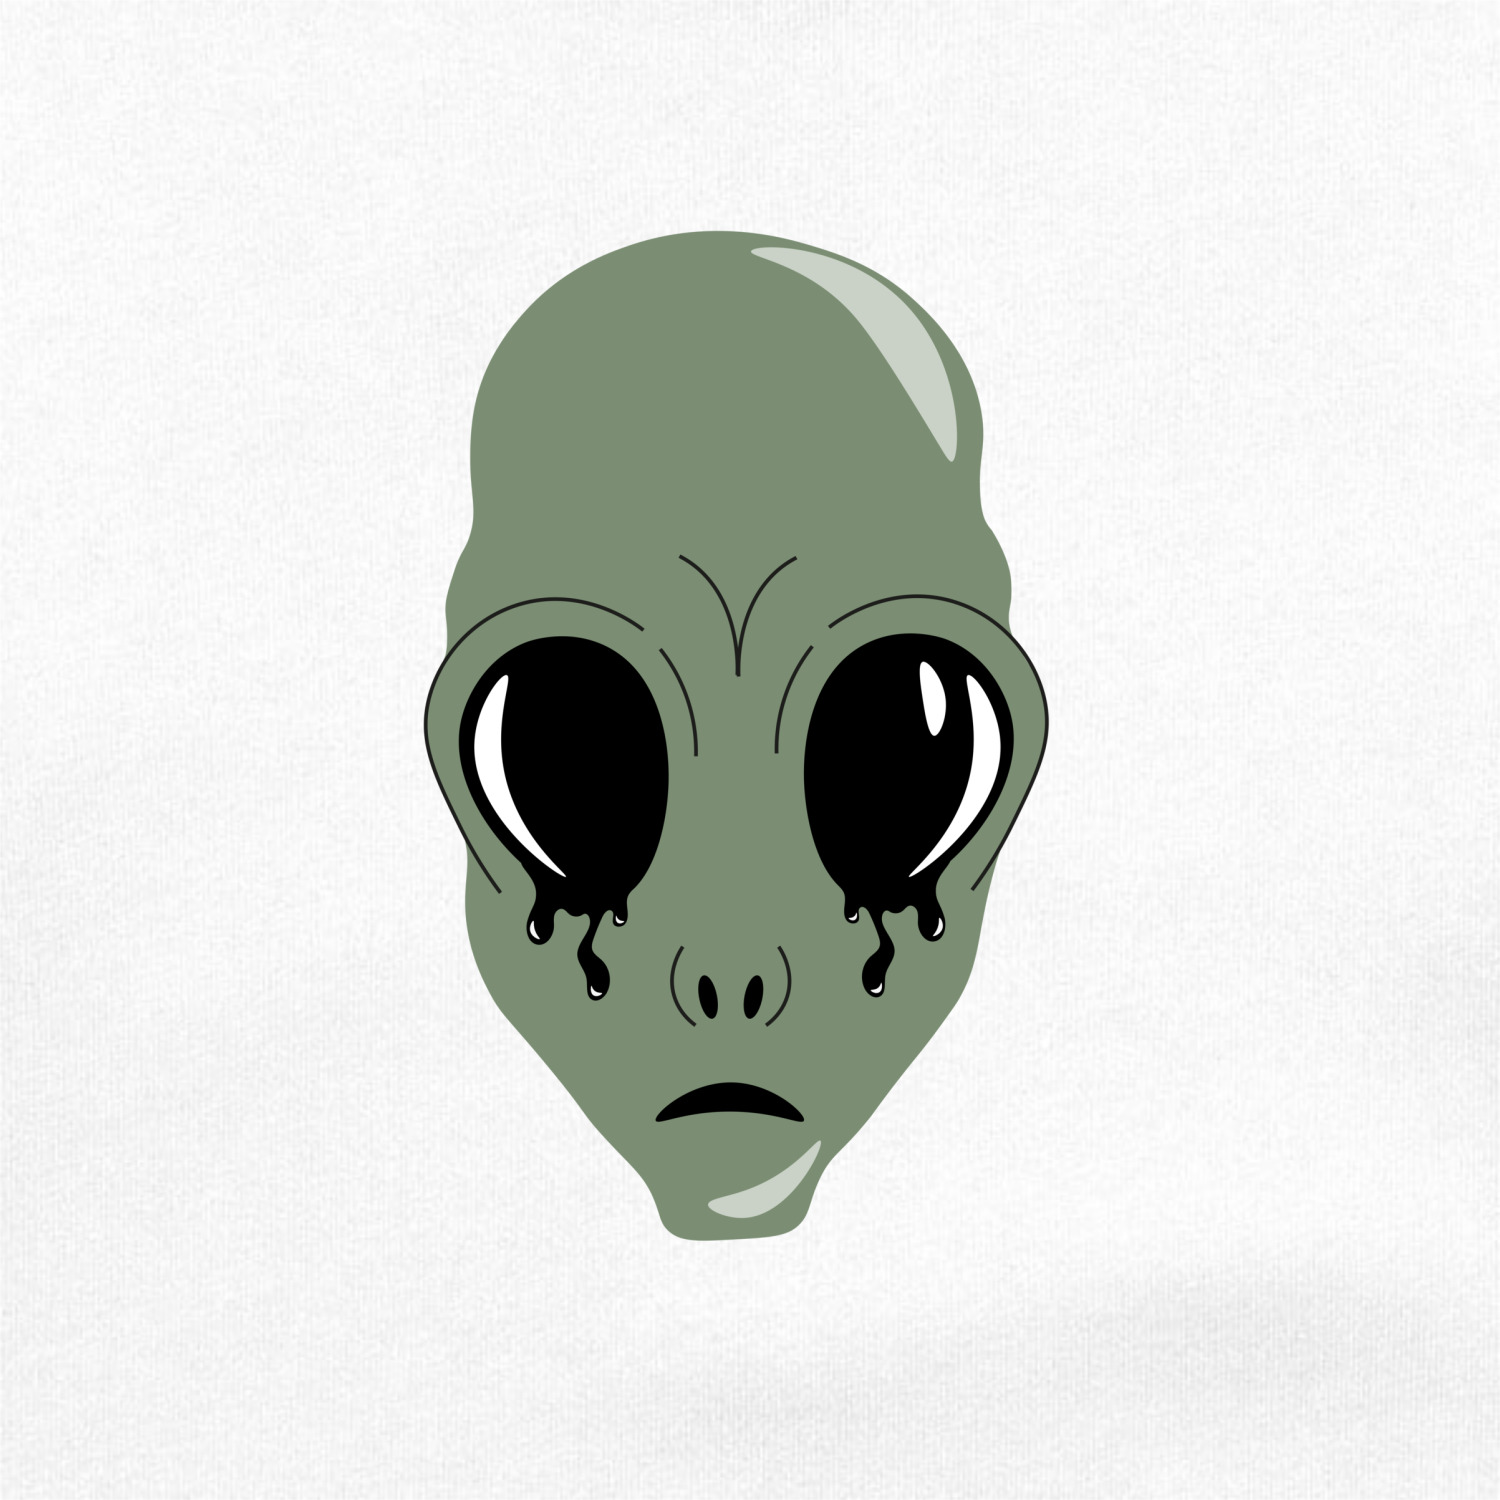 Голова пришельца. Голова инопланетянина сбоку. Инопланетяне с яйцевидной головой.